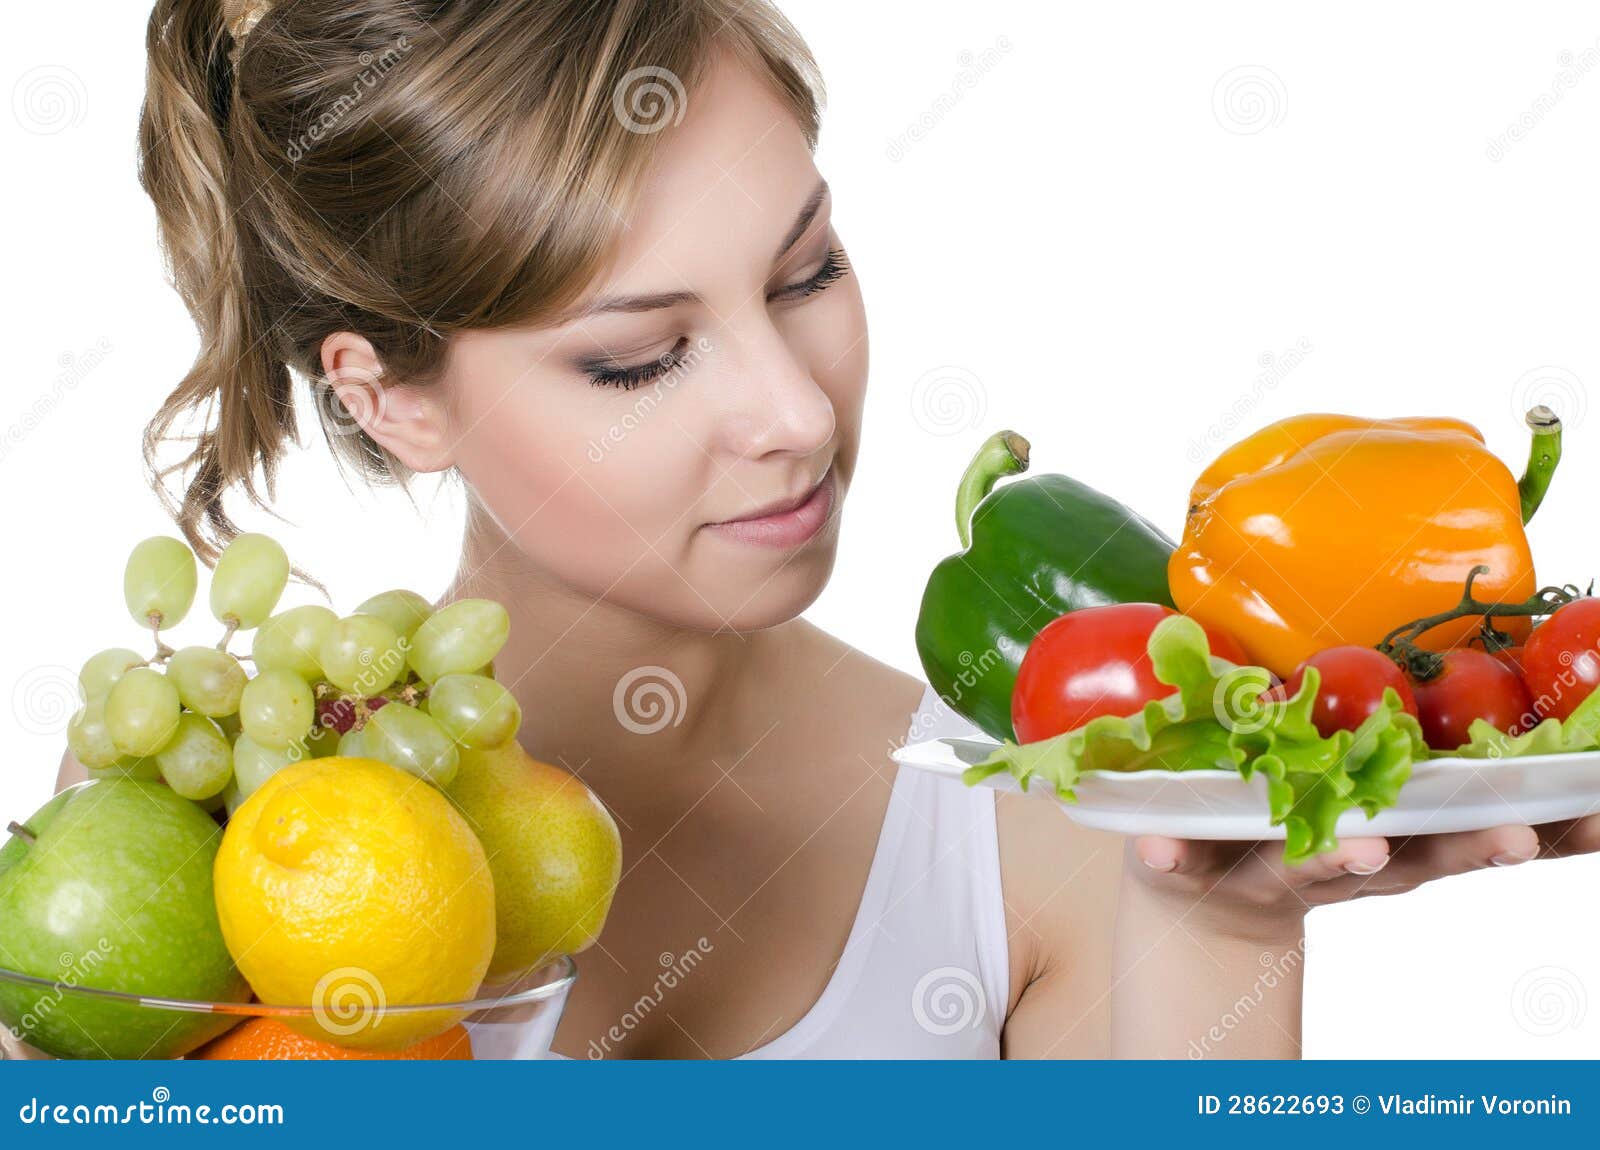 Mooi Meisje Met Fruit En Groenten Stock Afbeelding Image Of Mensen